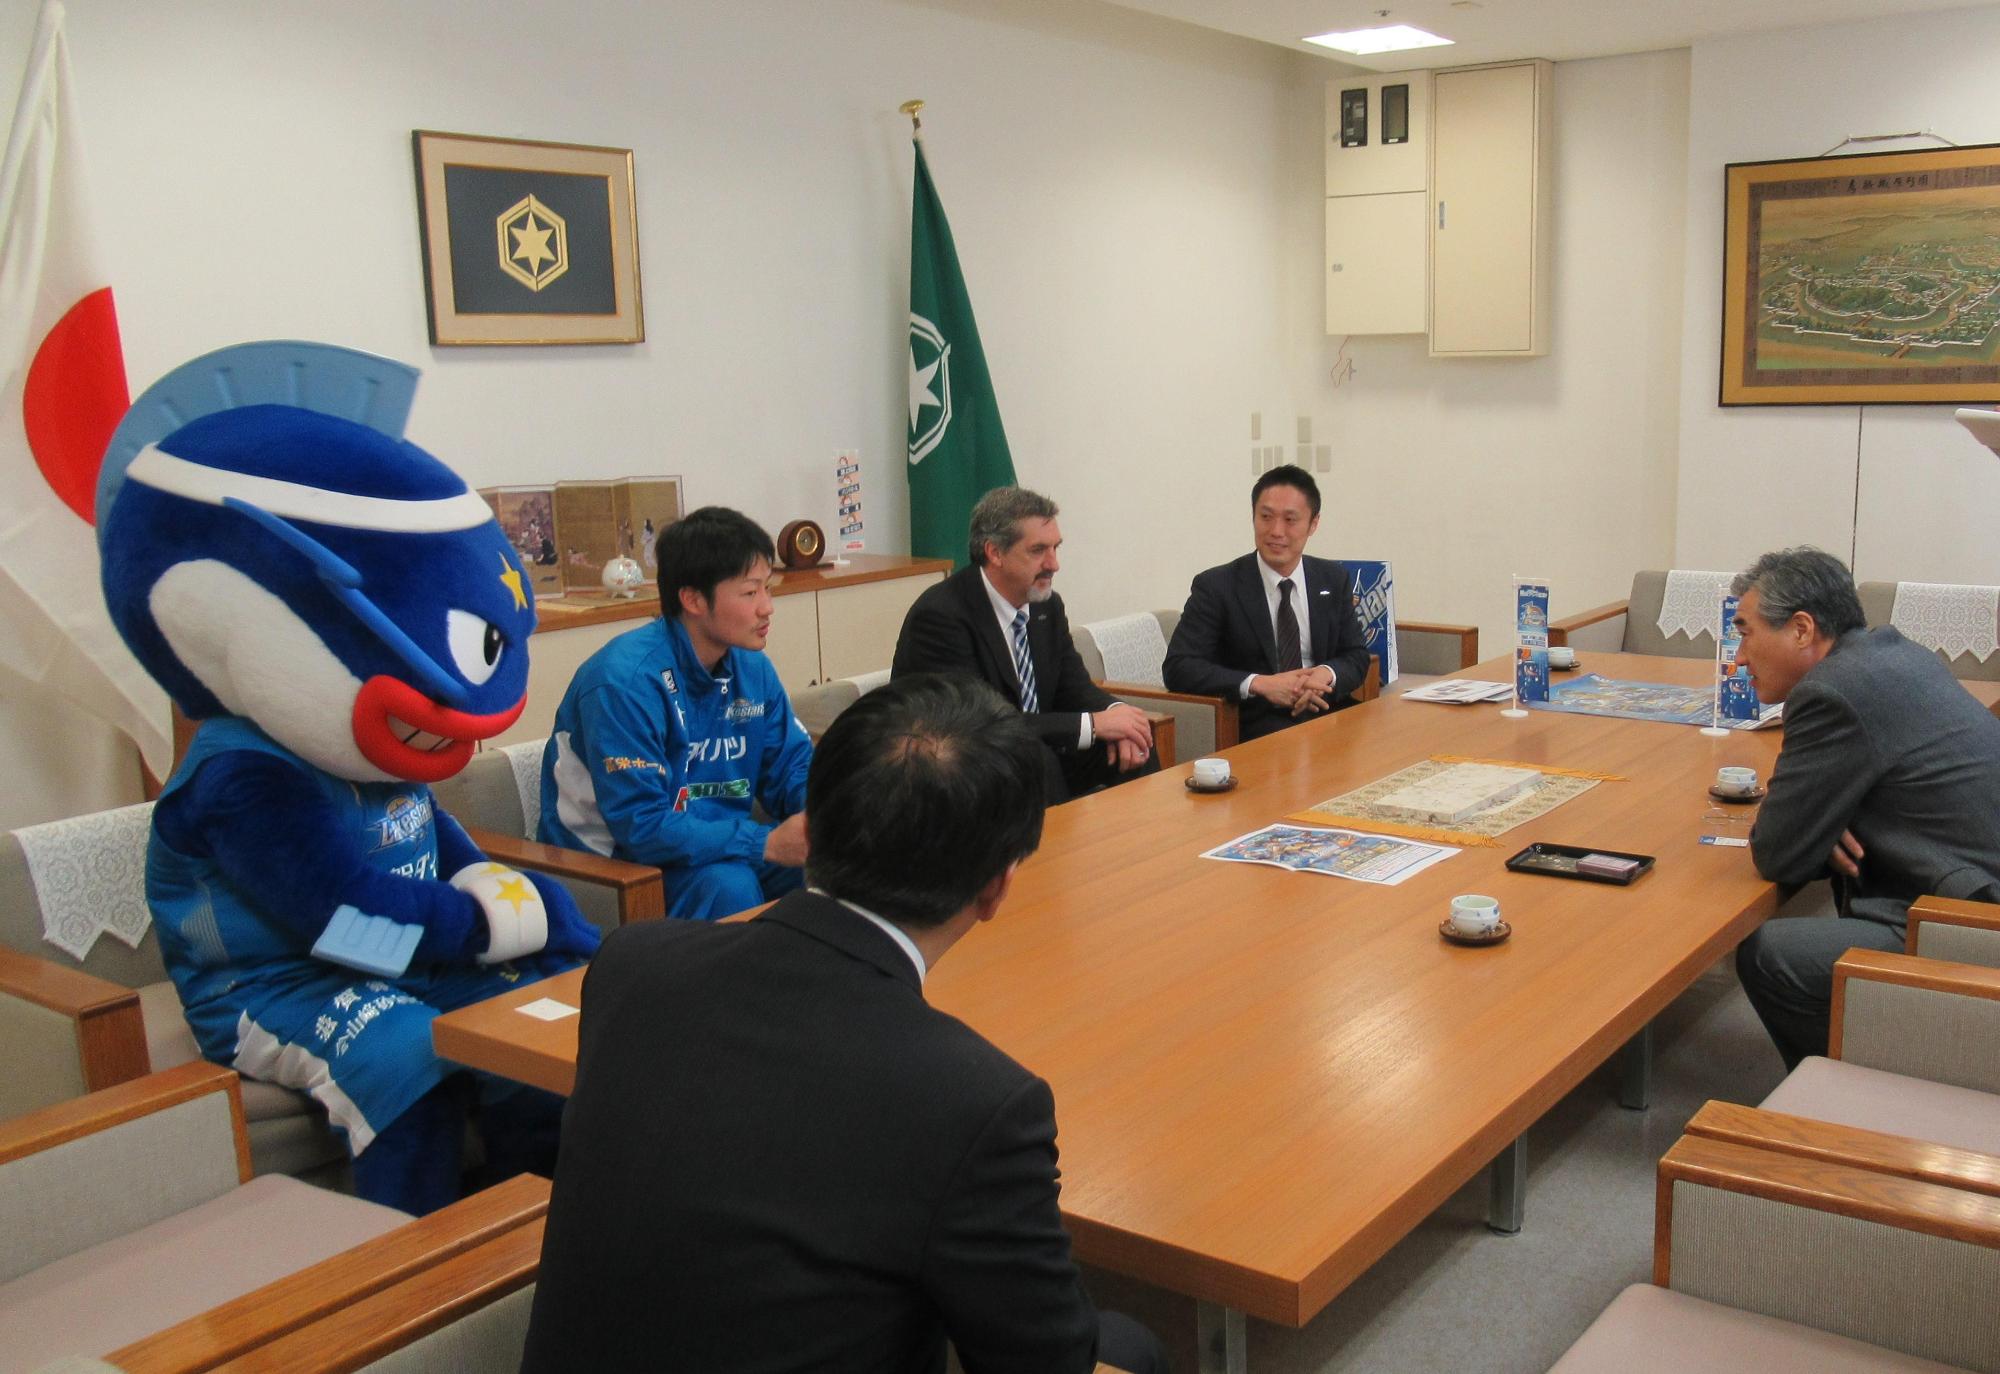 滋賀レイクスターズの選手と面談をしている市長の写真